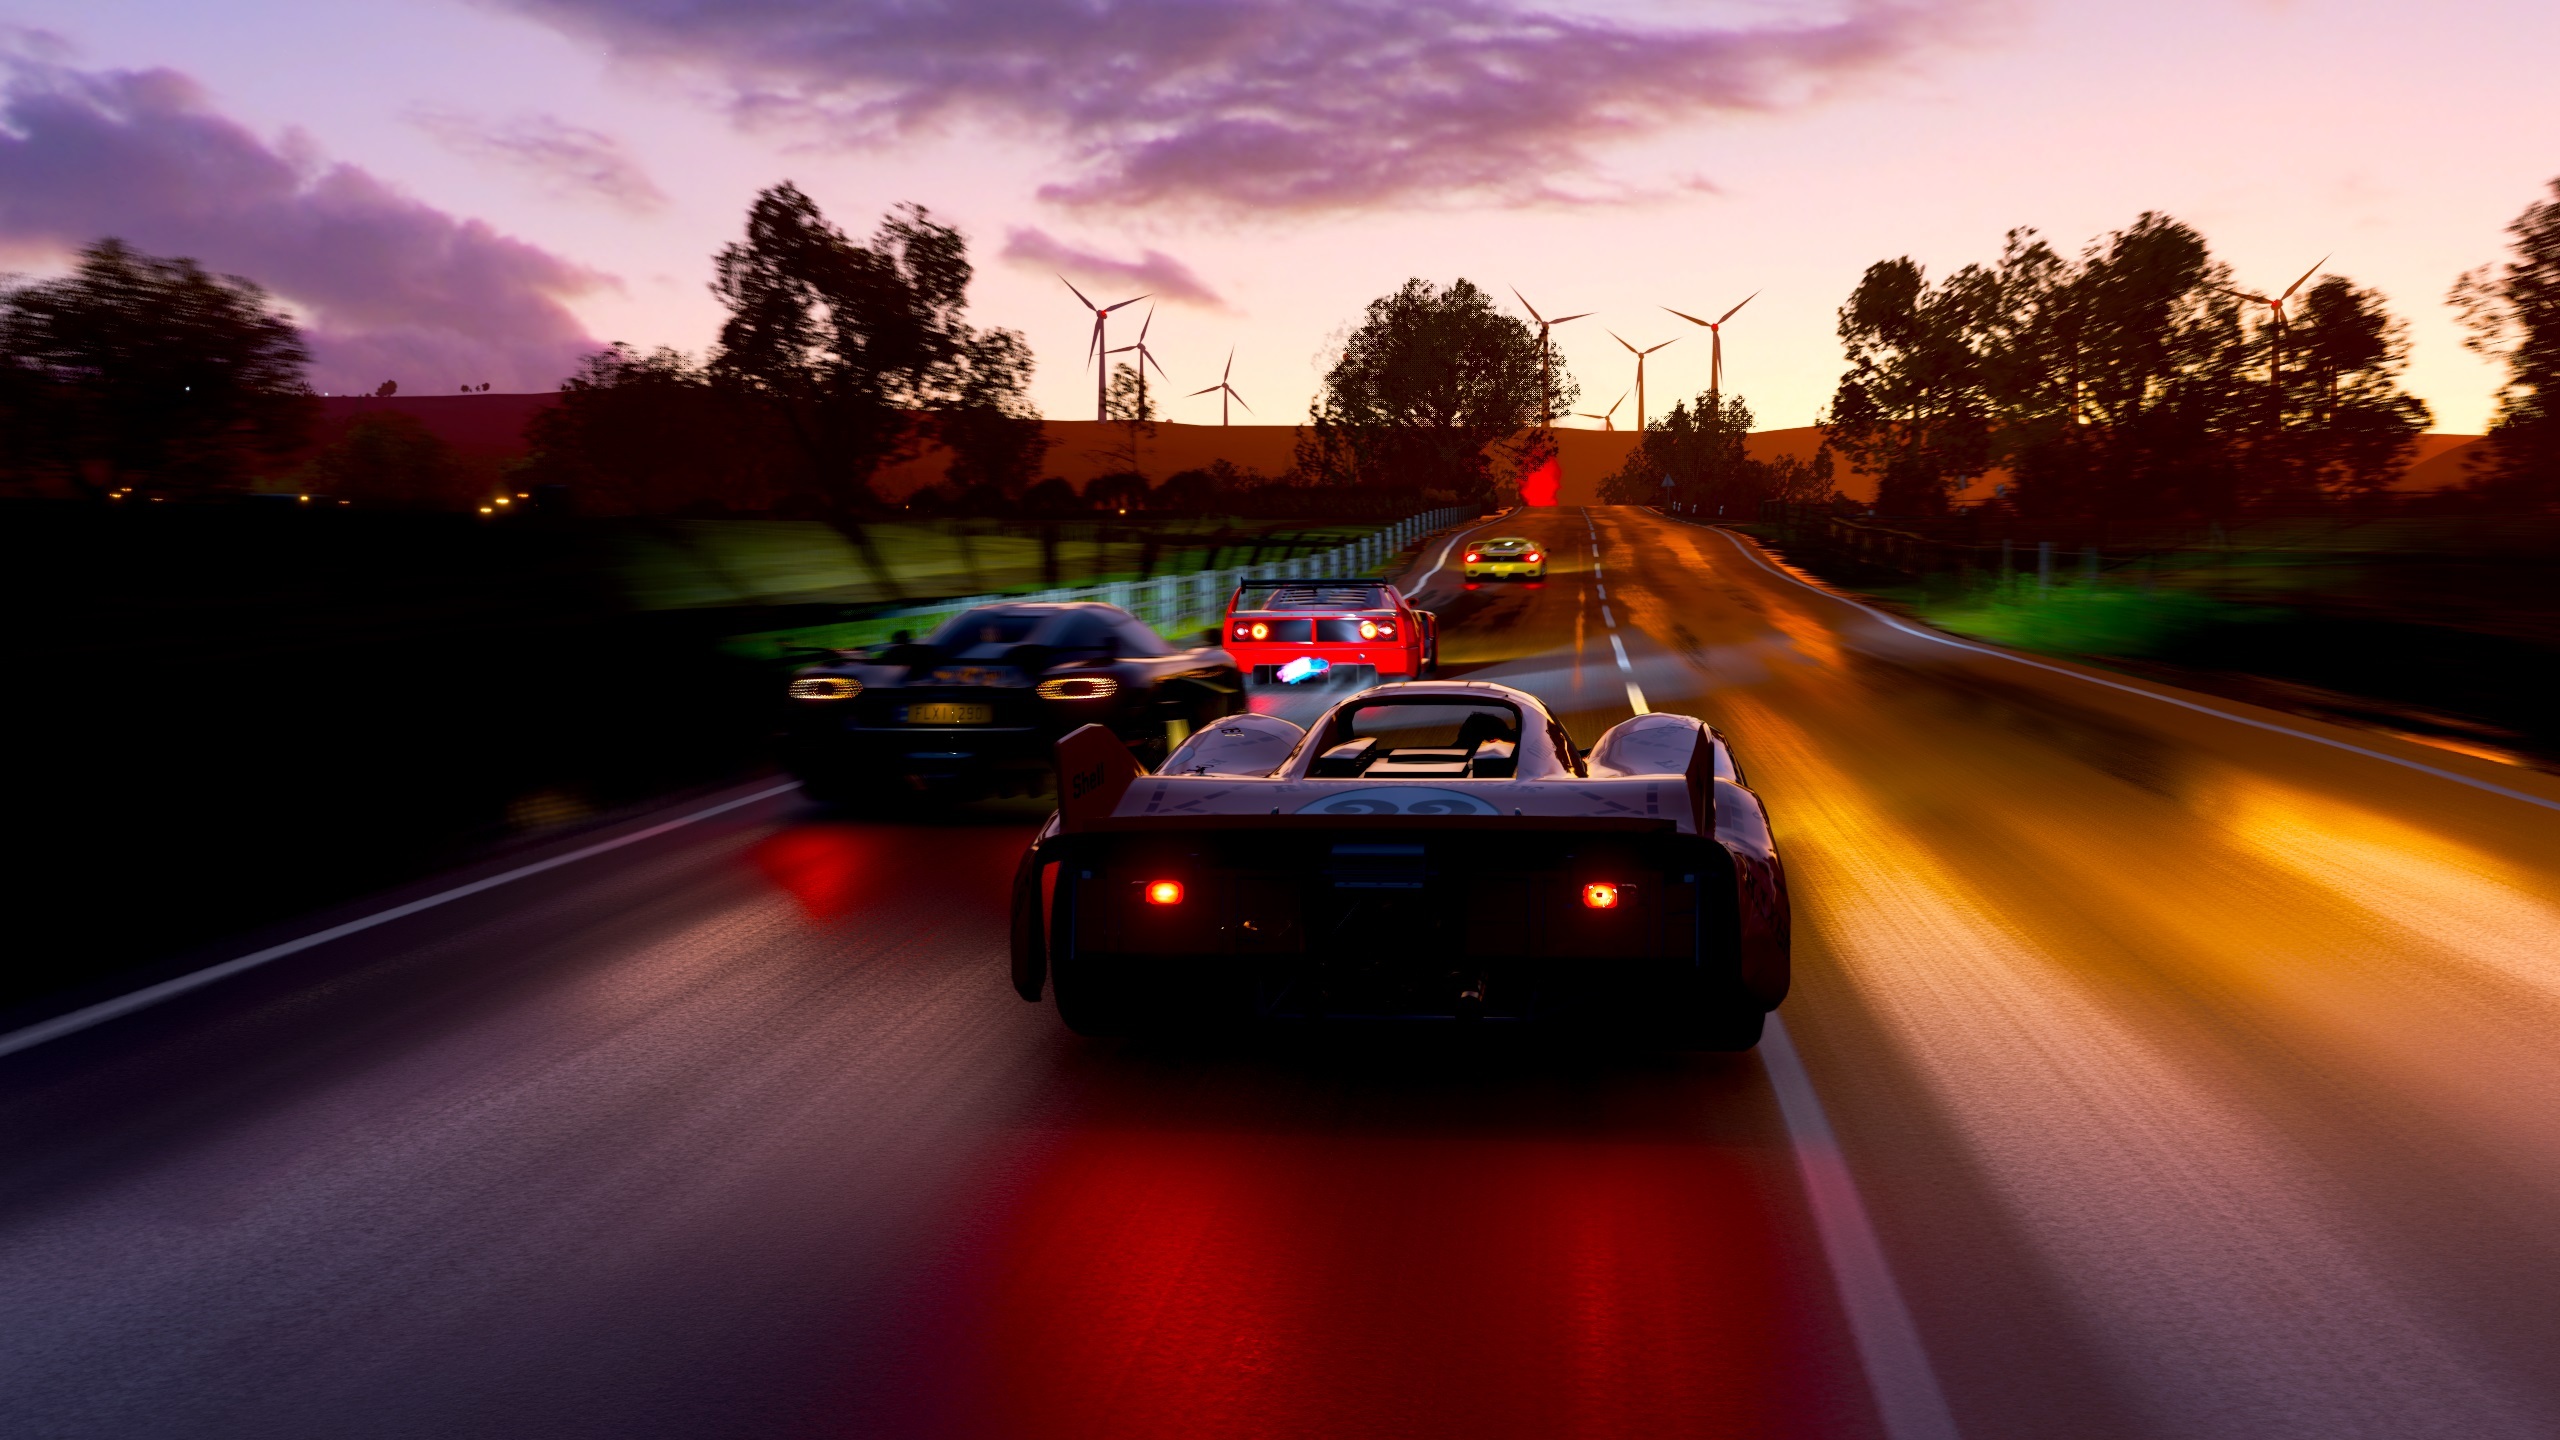 سی دی کی اریجینال بازی Forza Horizon 4